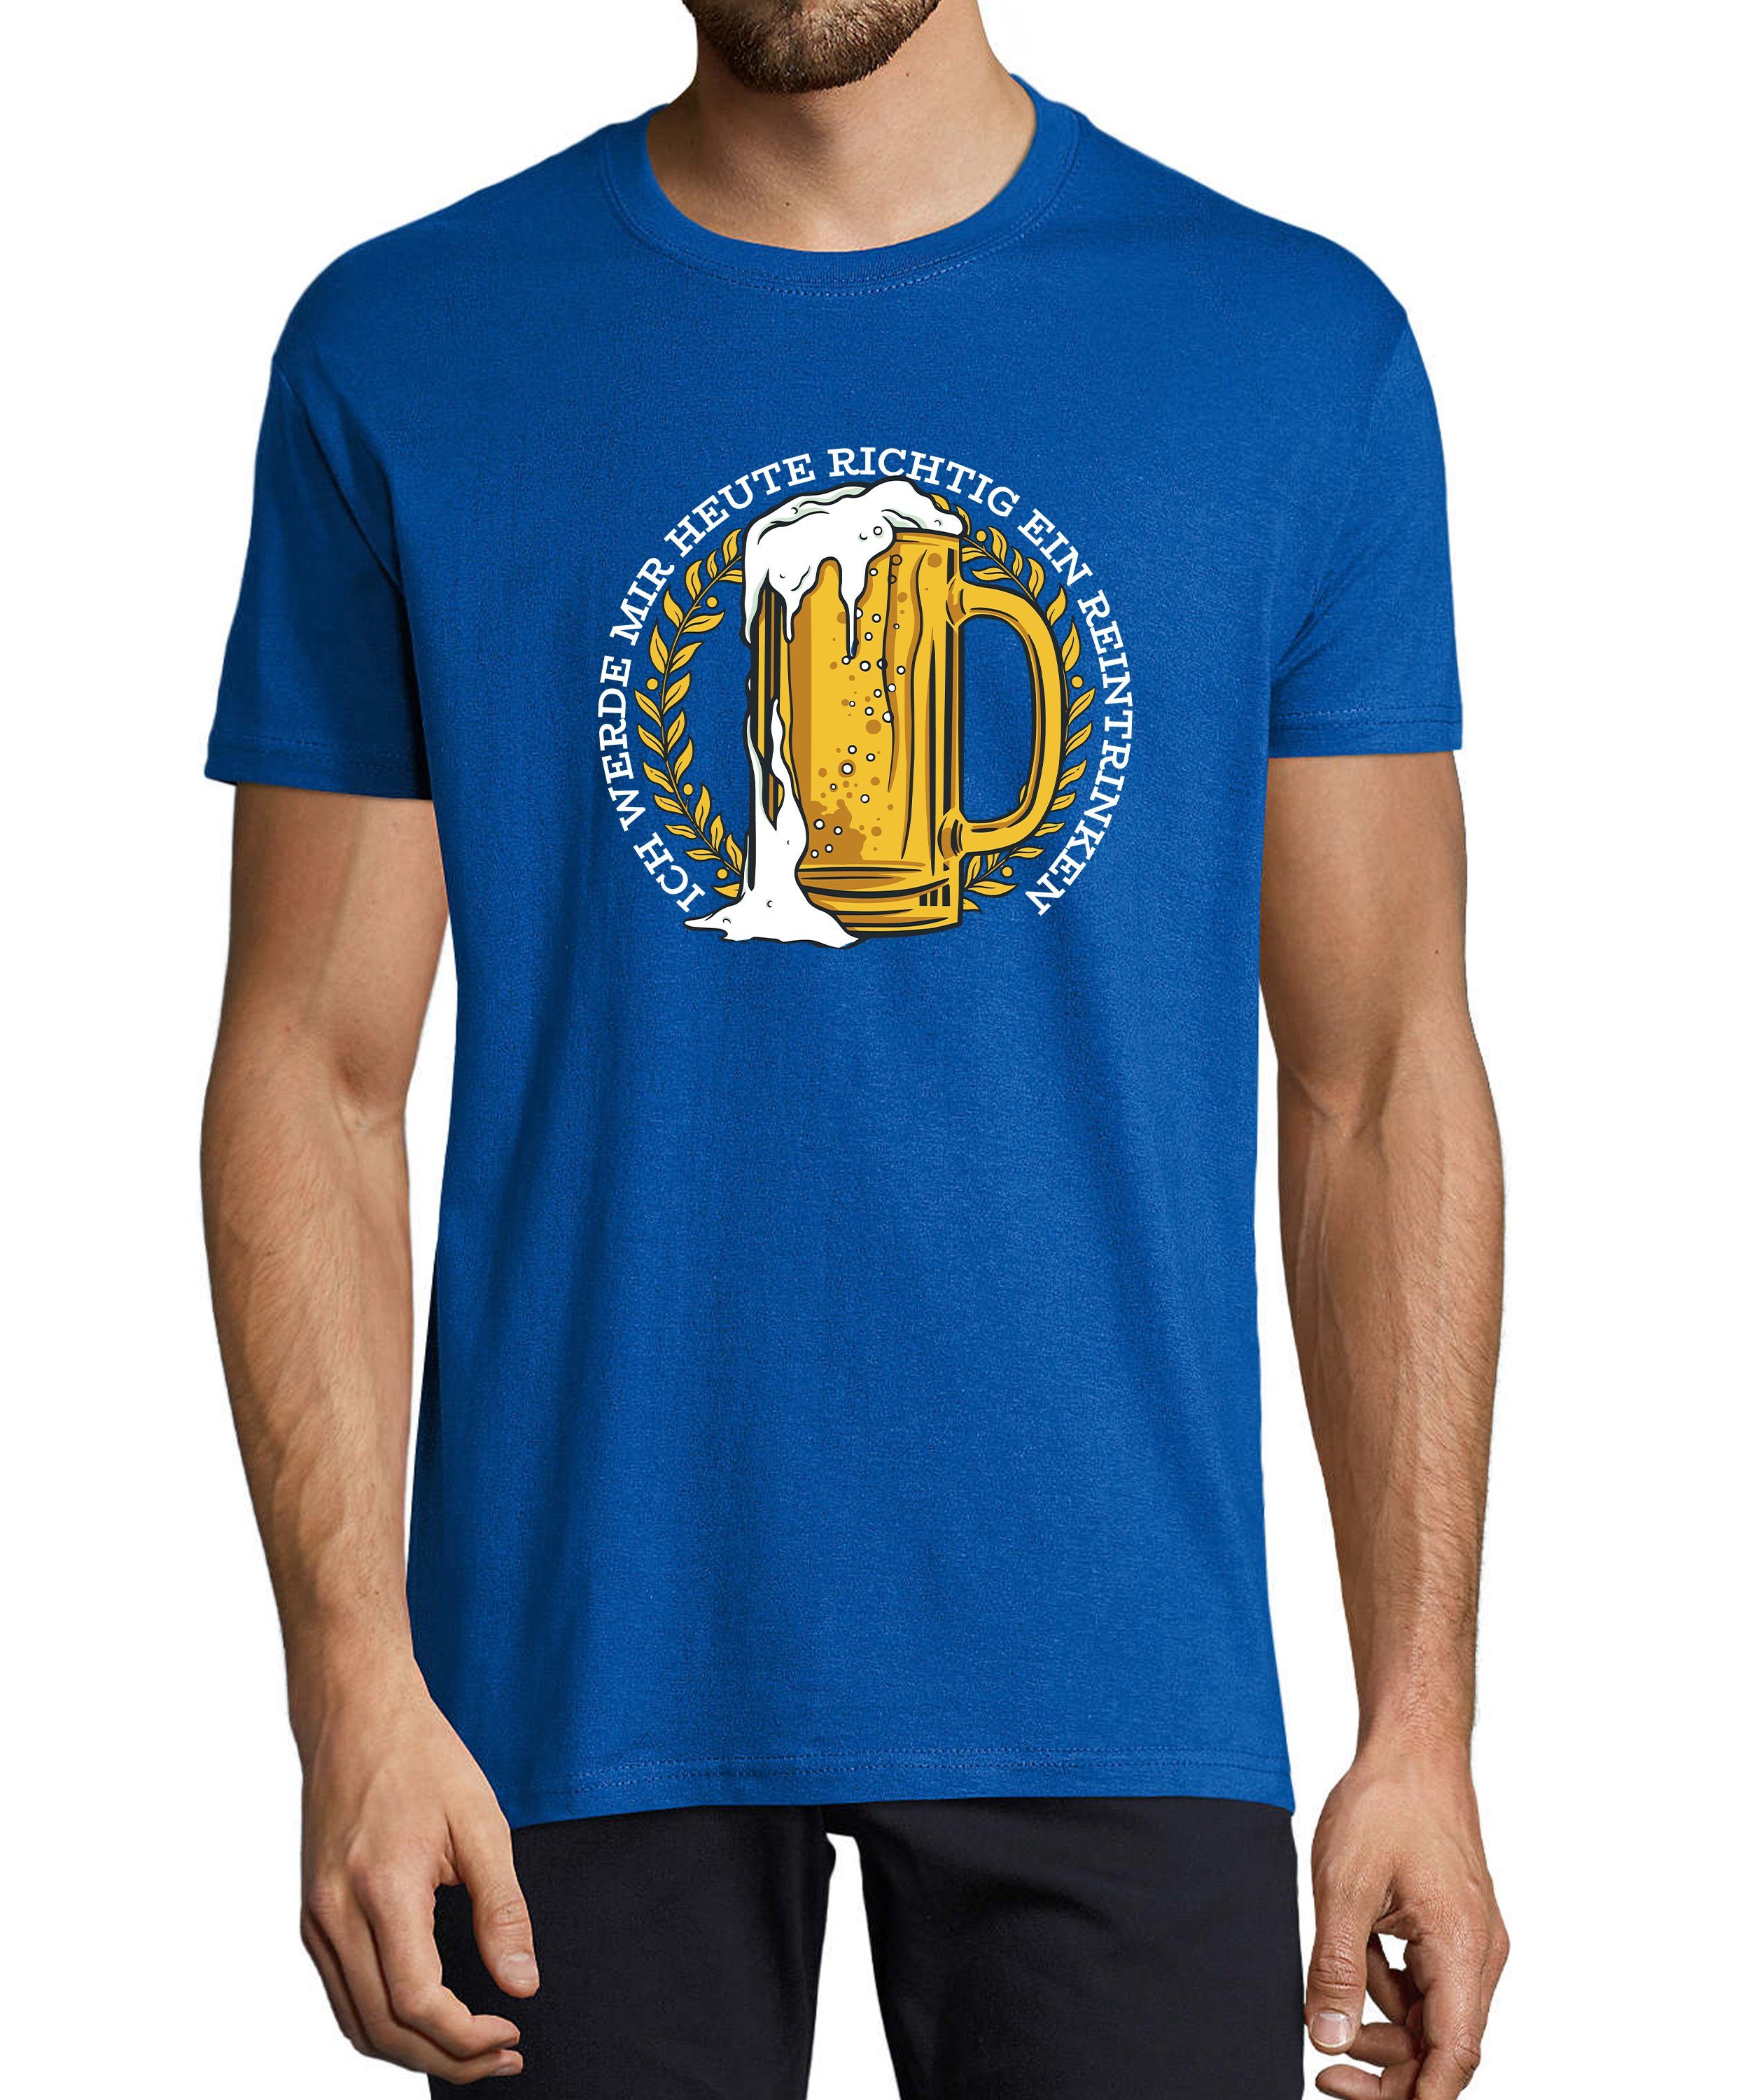 MyDesign24 T-Shirt Herren Fun Print Shirt - Oktoberfest Trinkshirt Mass Bier mit Spruch Baumwollshirt mit Aufdruck Regular Fit, i311 royal blau